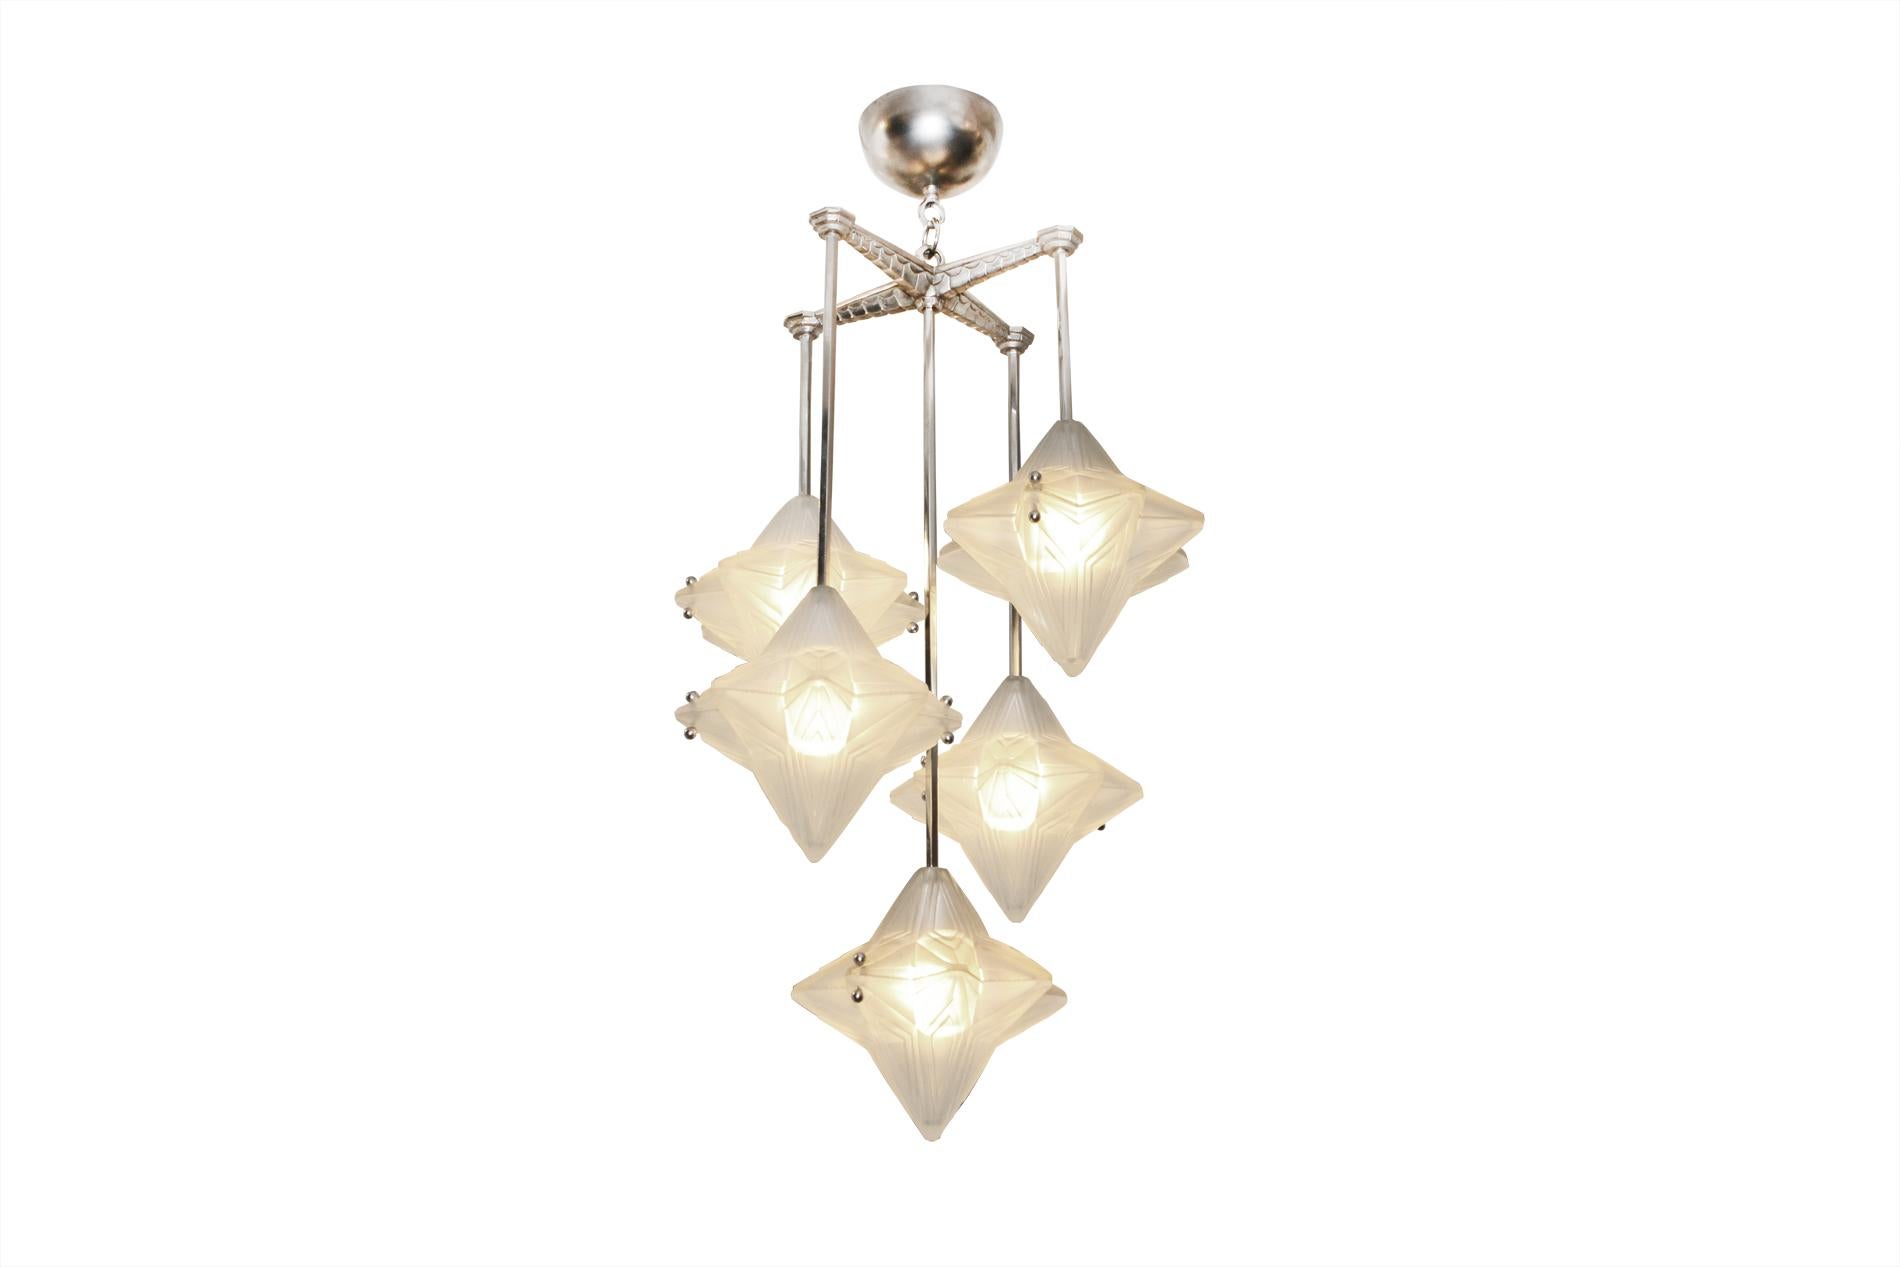 Französischer Art-Déco-Kronleuchter von Genet & Michon um 1930  mit 5 Lichtern auf verschiedenen Ebenen - Jede Lichtabdeckung, die aus zwei identischen Teilen aus gepresstem Glas besteht, erinnert an eine fallende Blume - Vernickelte Bronze. 